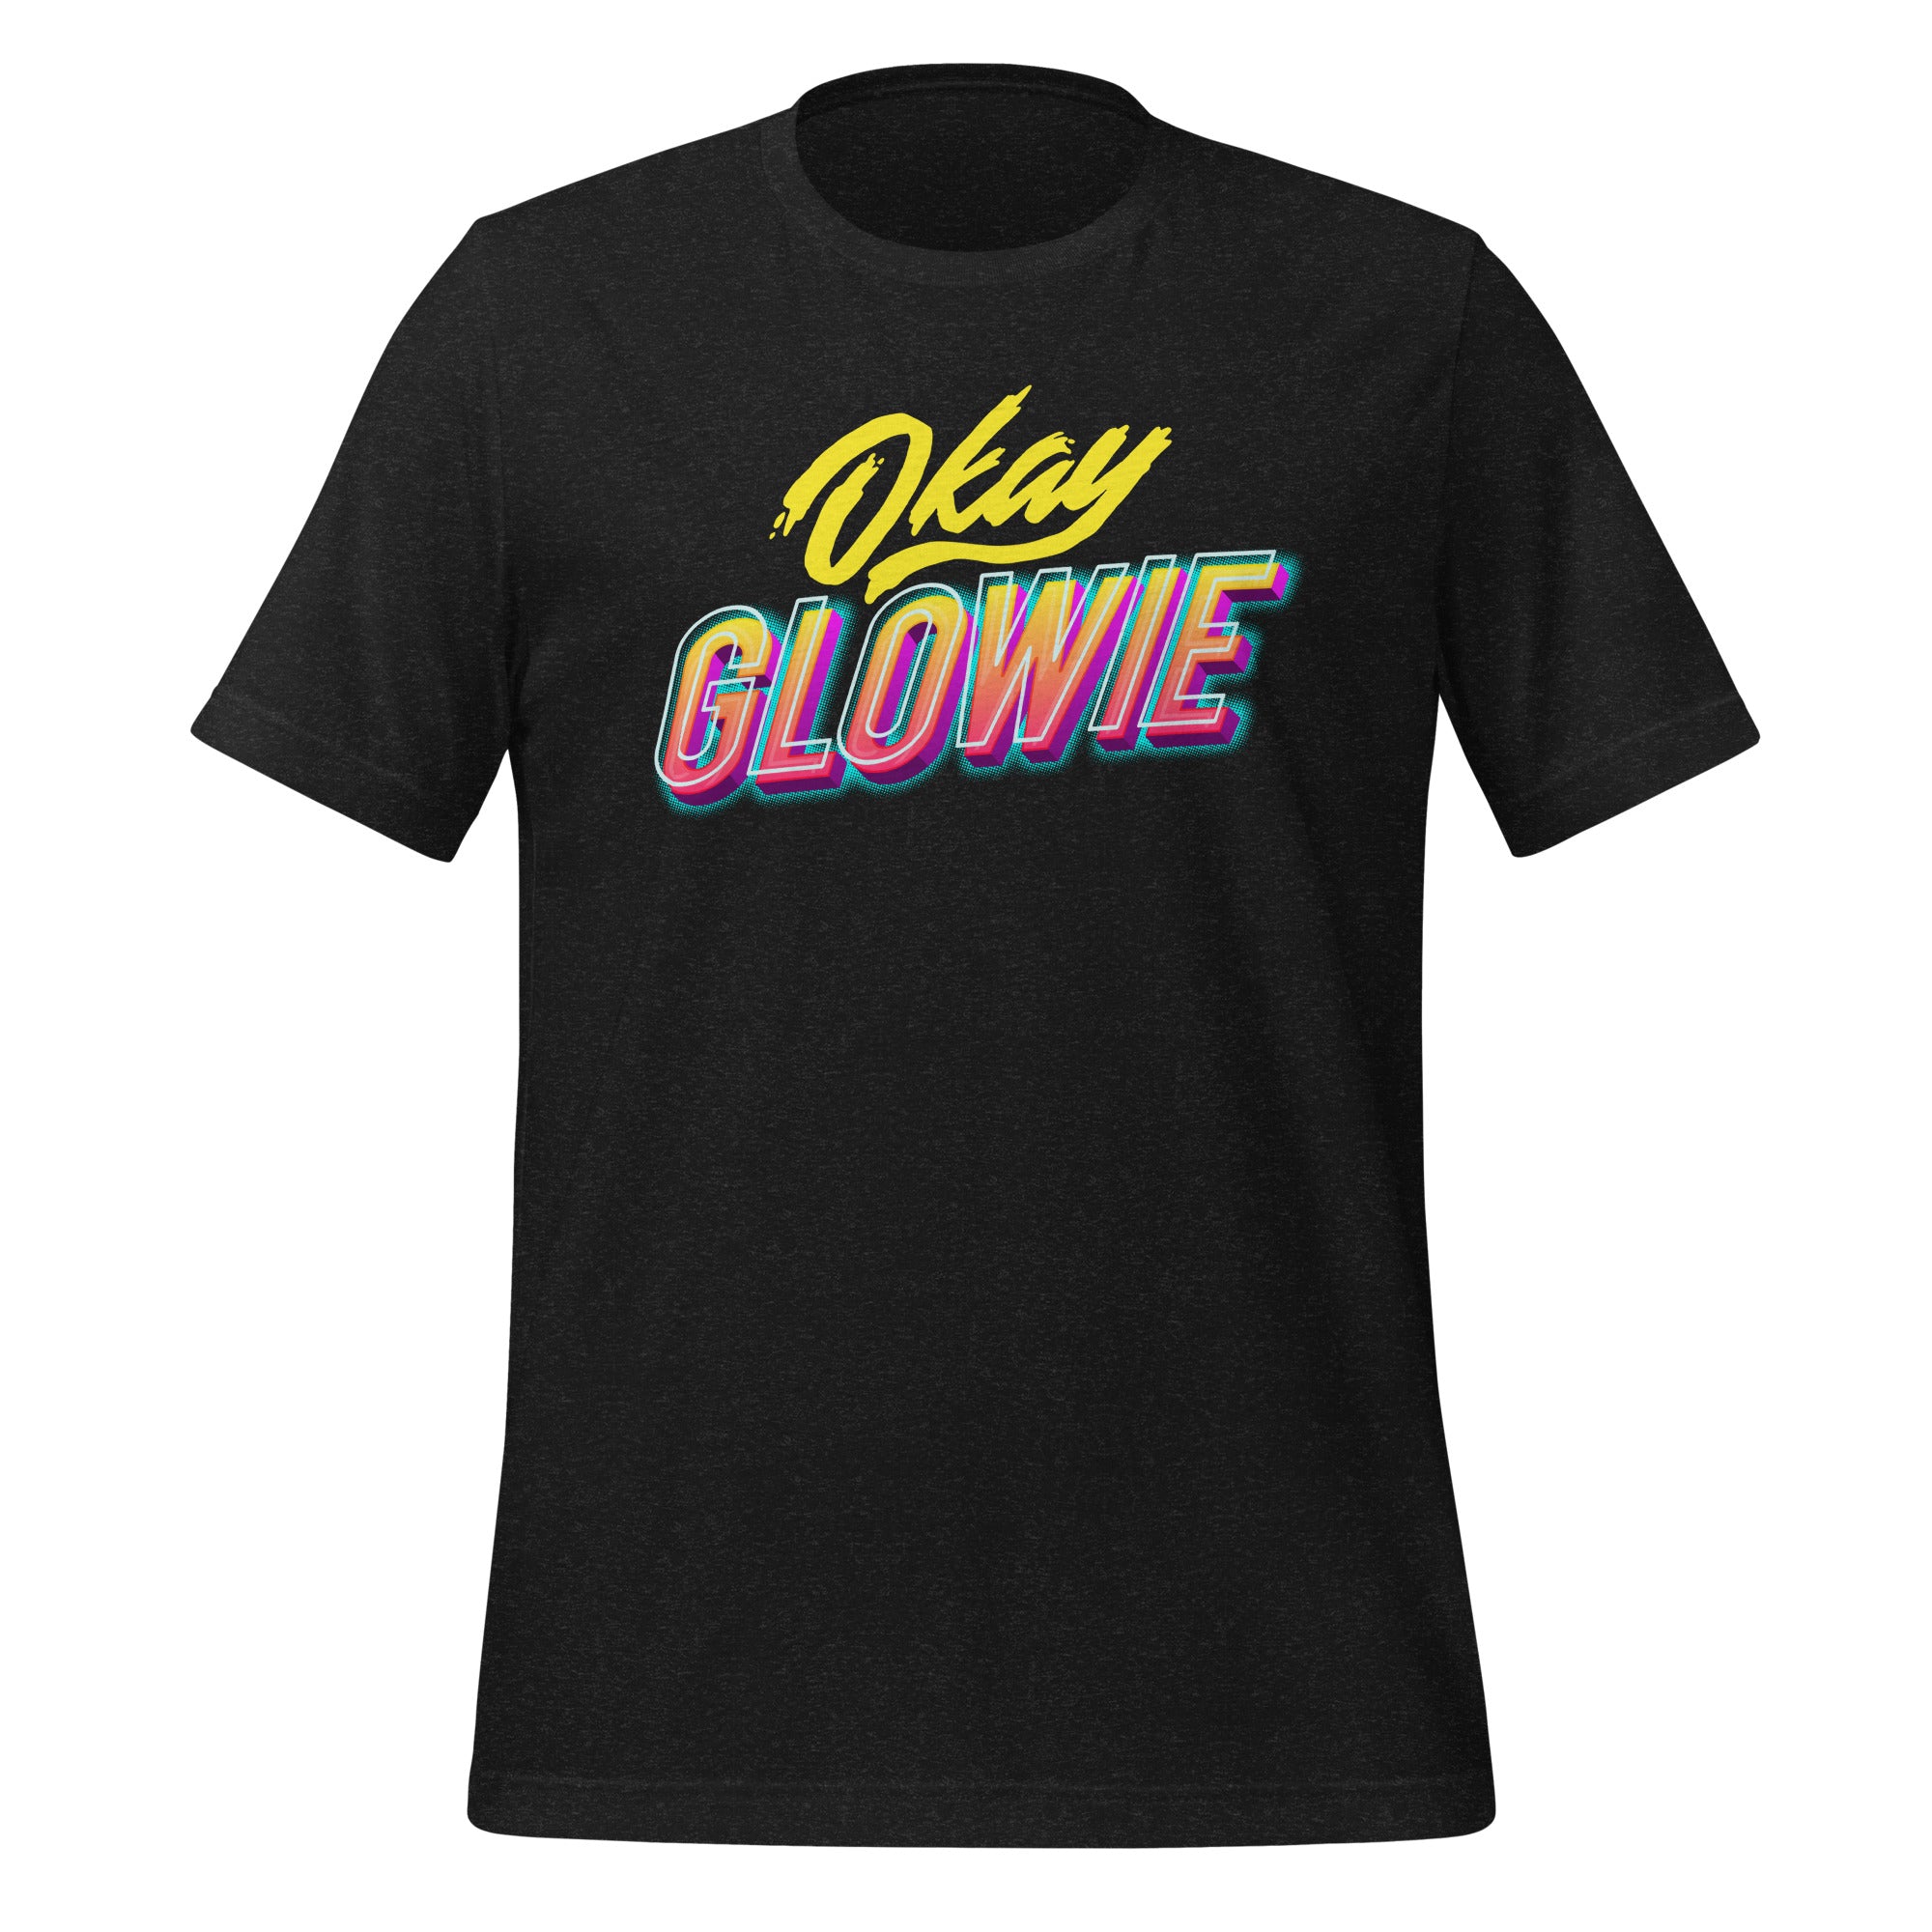 Okay Glowie T-Shirt